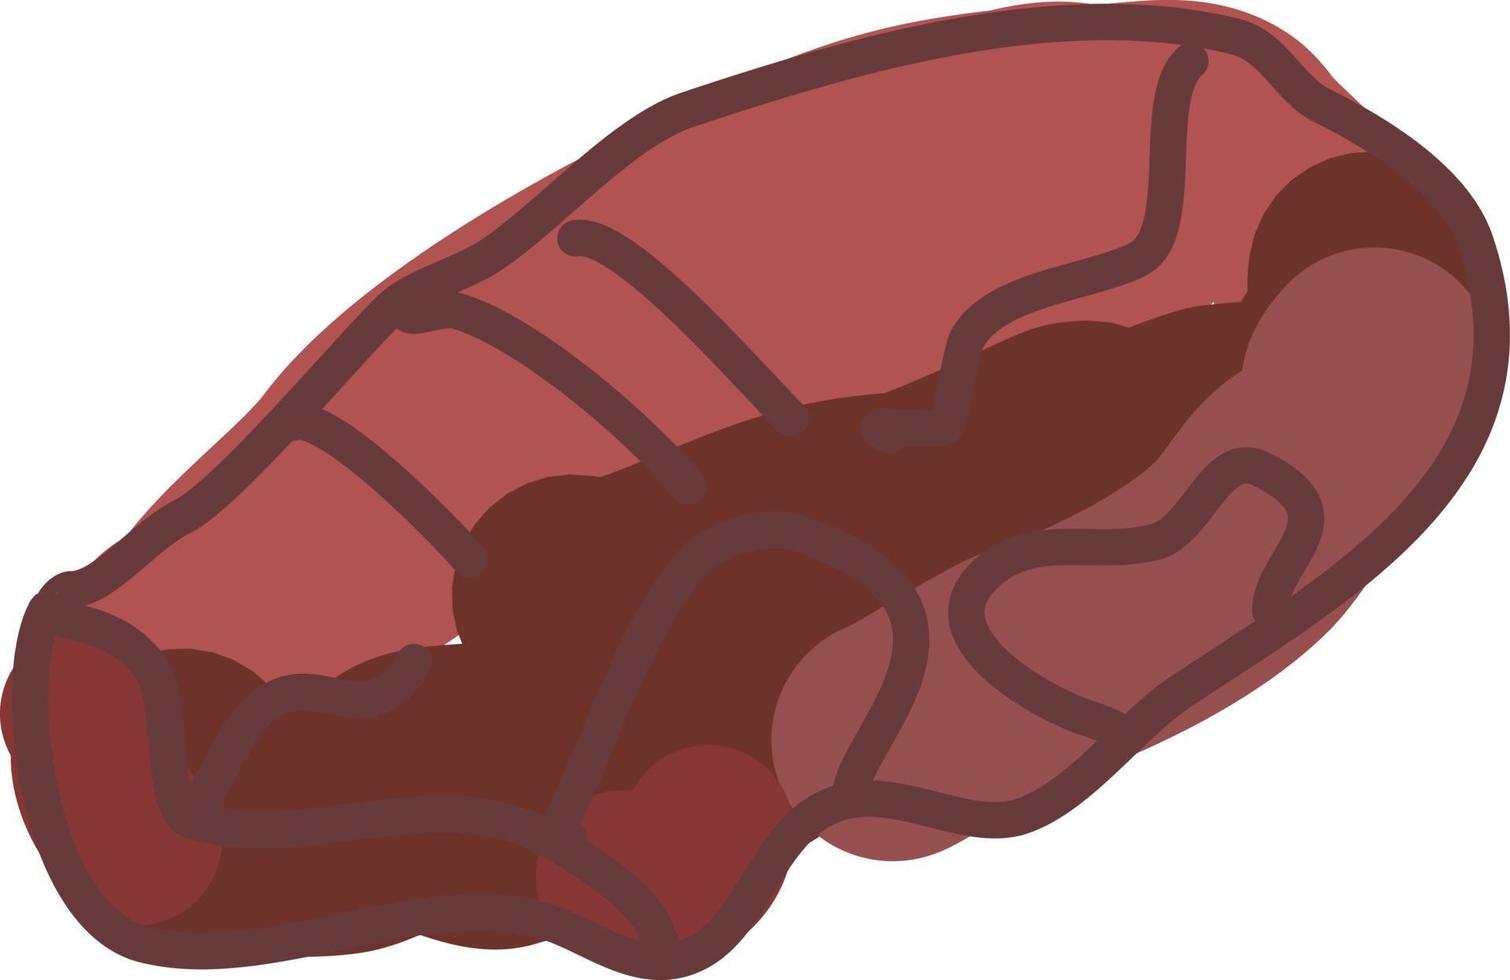 Steak, illustration, vector on white background.